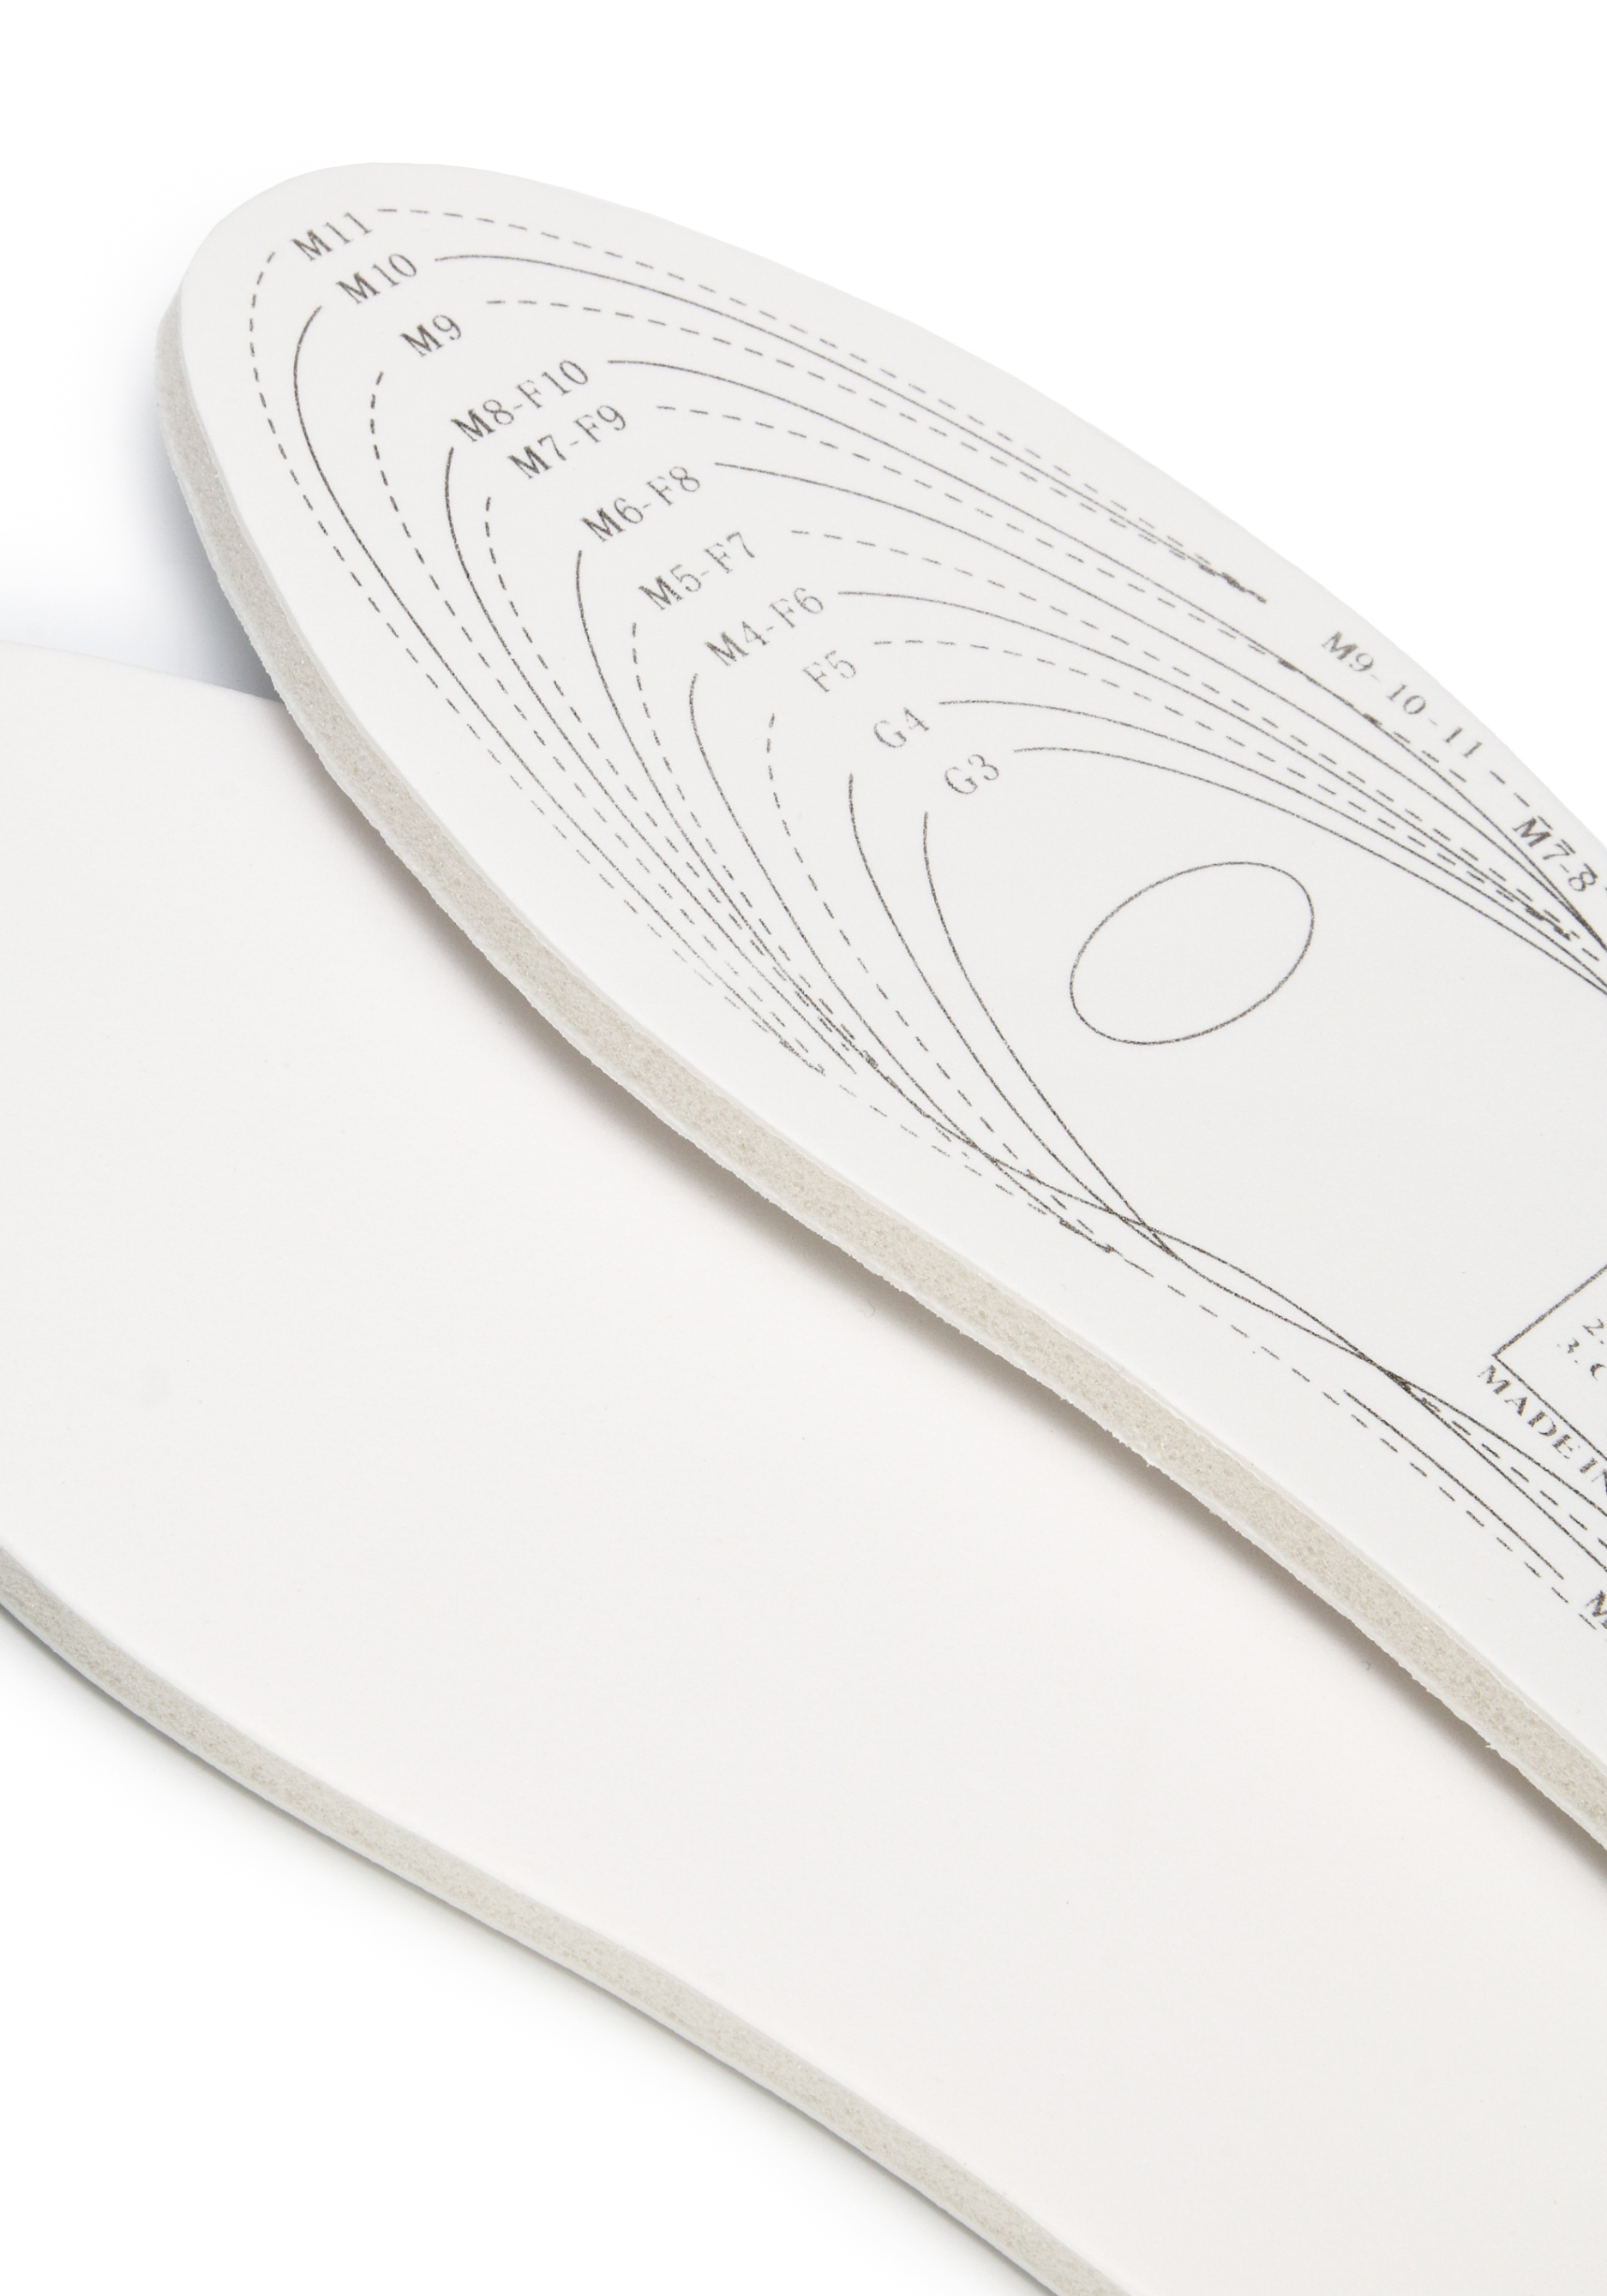 Стельки для обуви с эффектом памяти, 2 пары Bradex, цвет белый, размер универсальный - фото 4